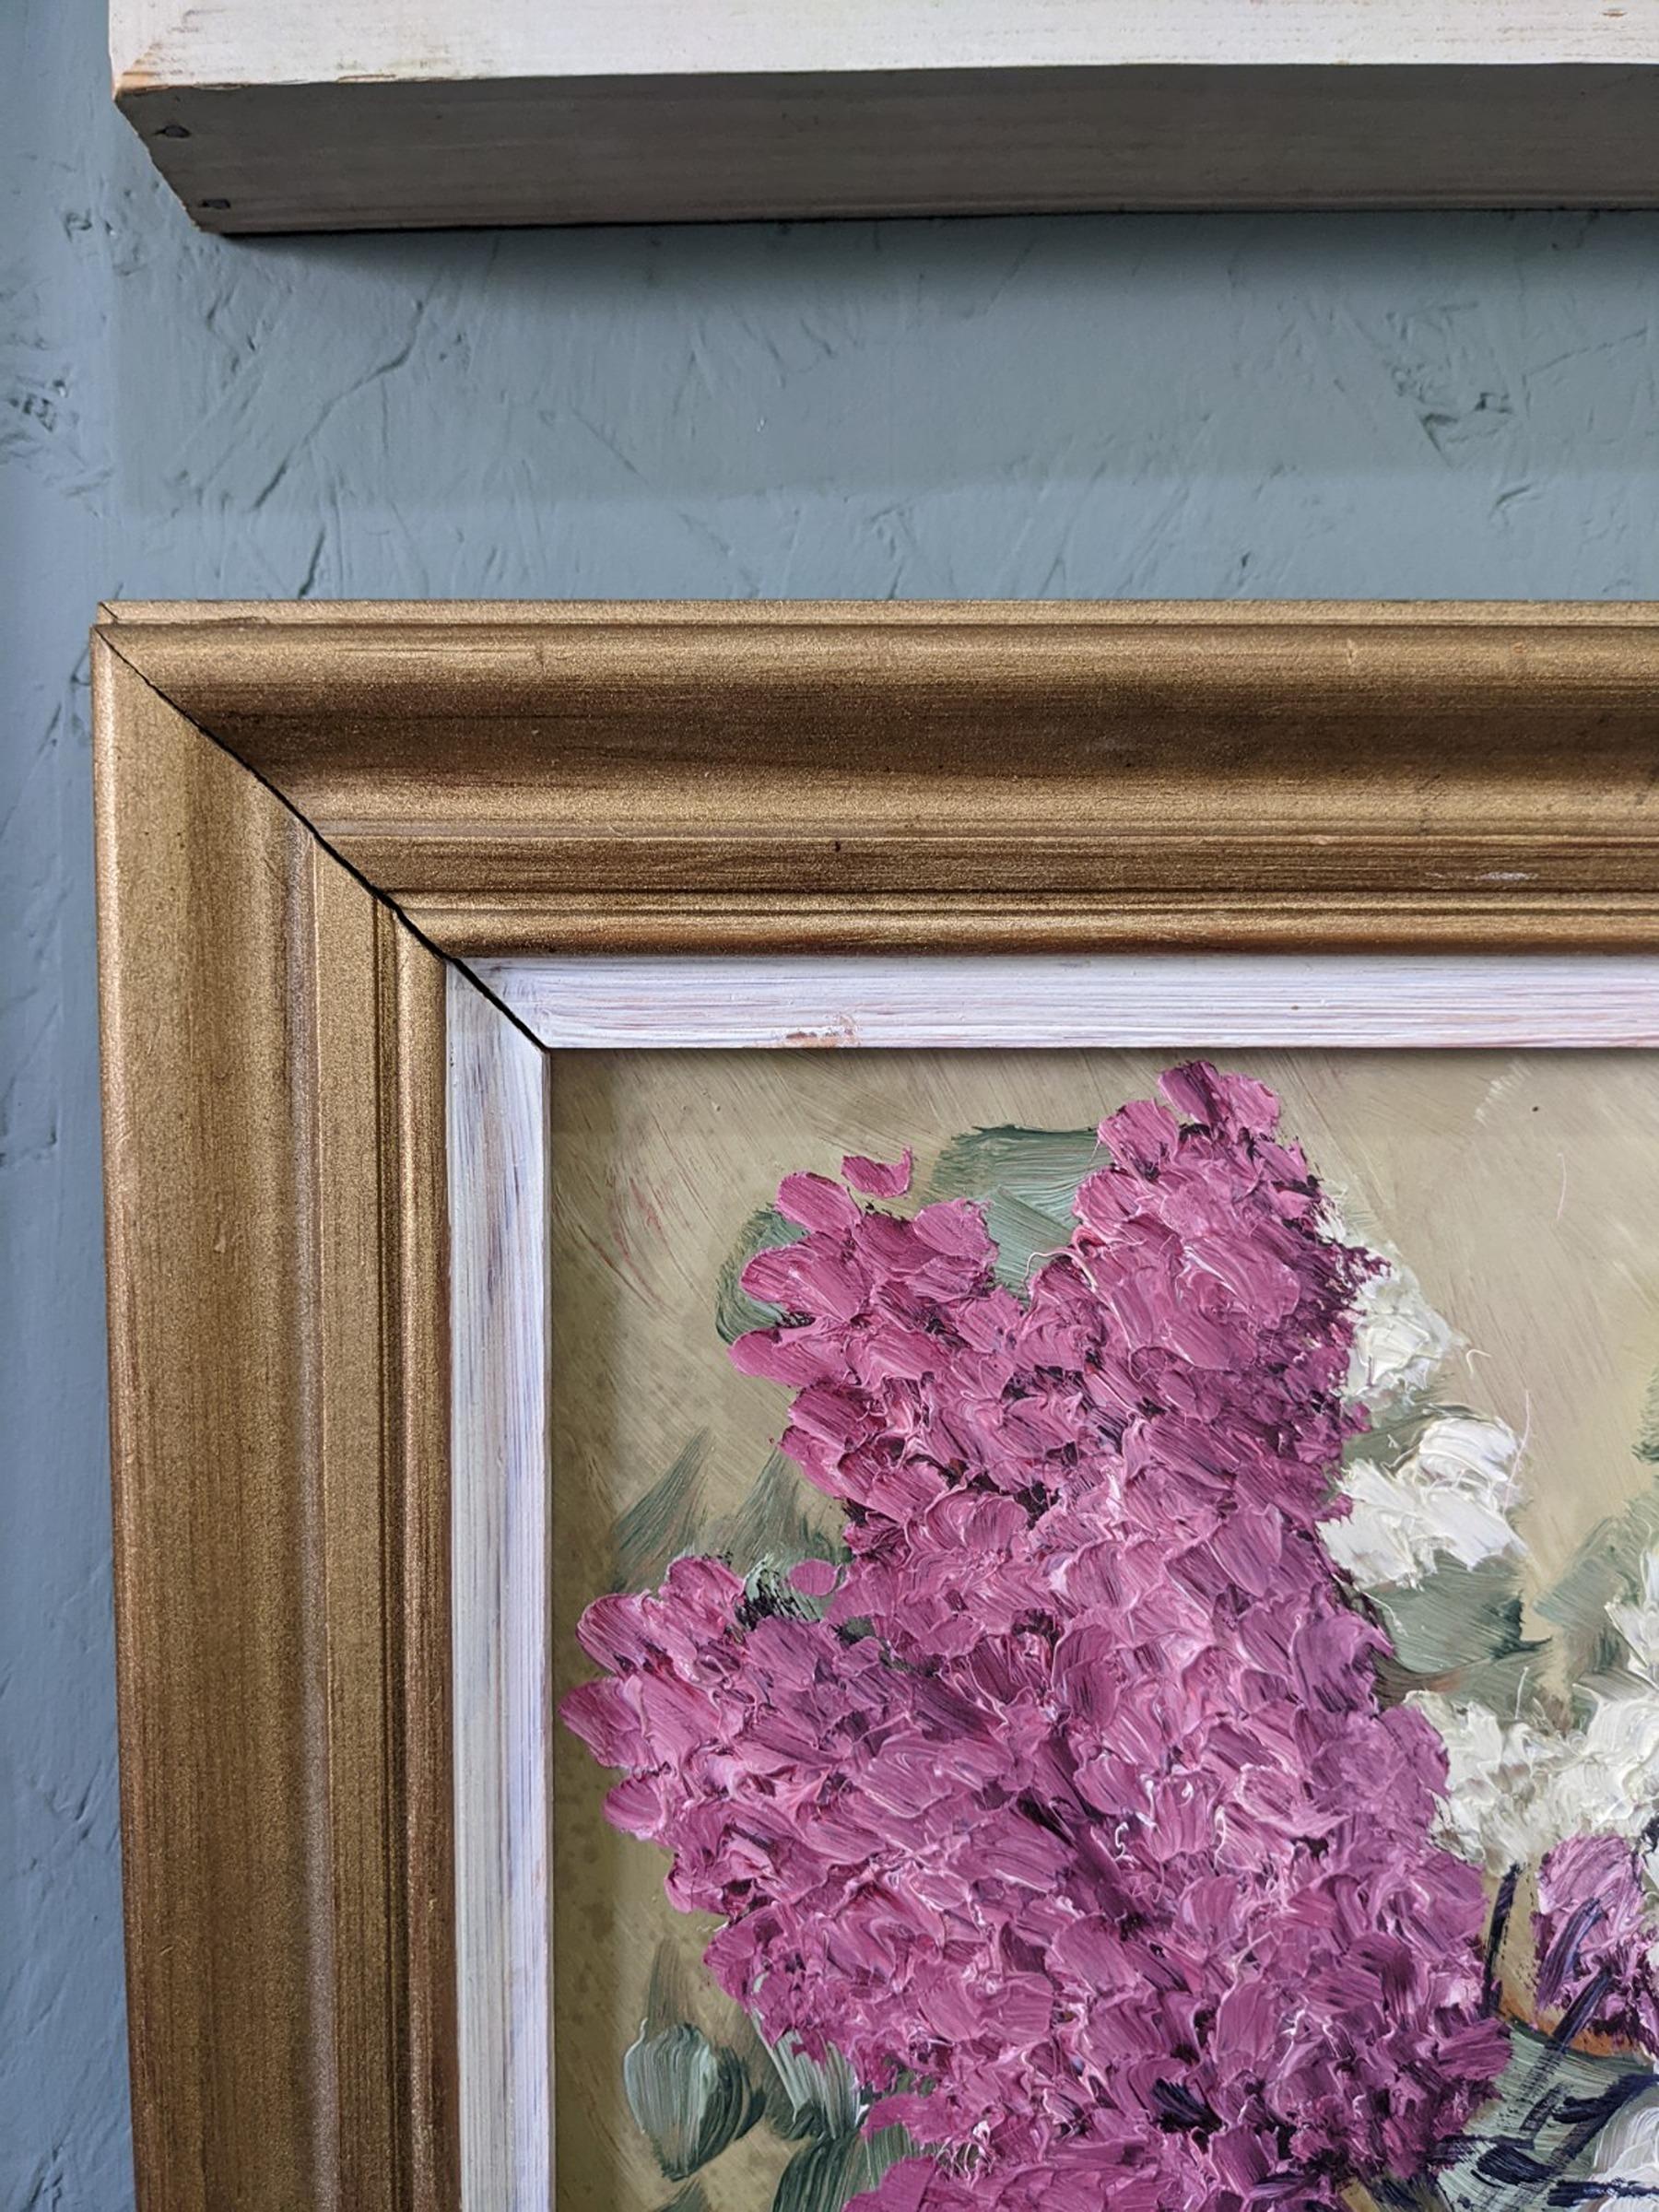 HYACINTHS
Taille : 52 x 42 cm (cadre compris)
Huile sur panneau

Une nature morte florale du milieu du siècle, expressive et magnifiquement texturée, exécutée à l'huile sur panneau.

La composition s'articule autour d'un bouquet de jacinthes roses